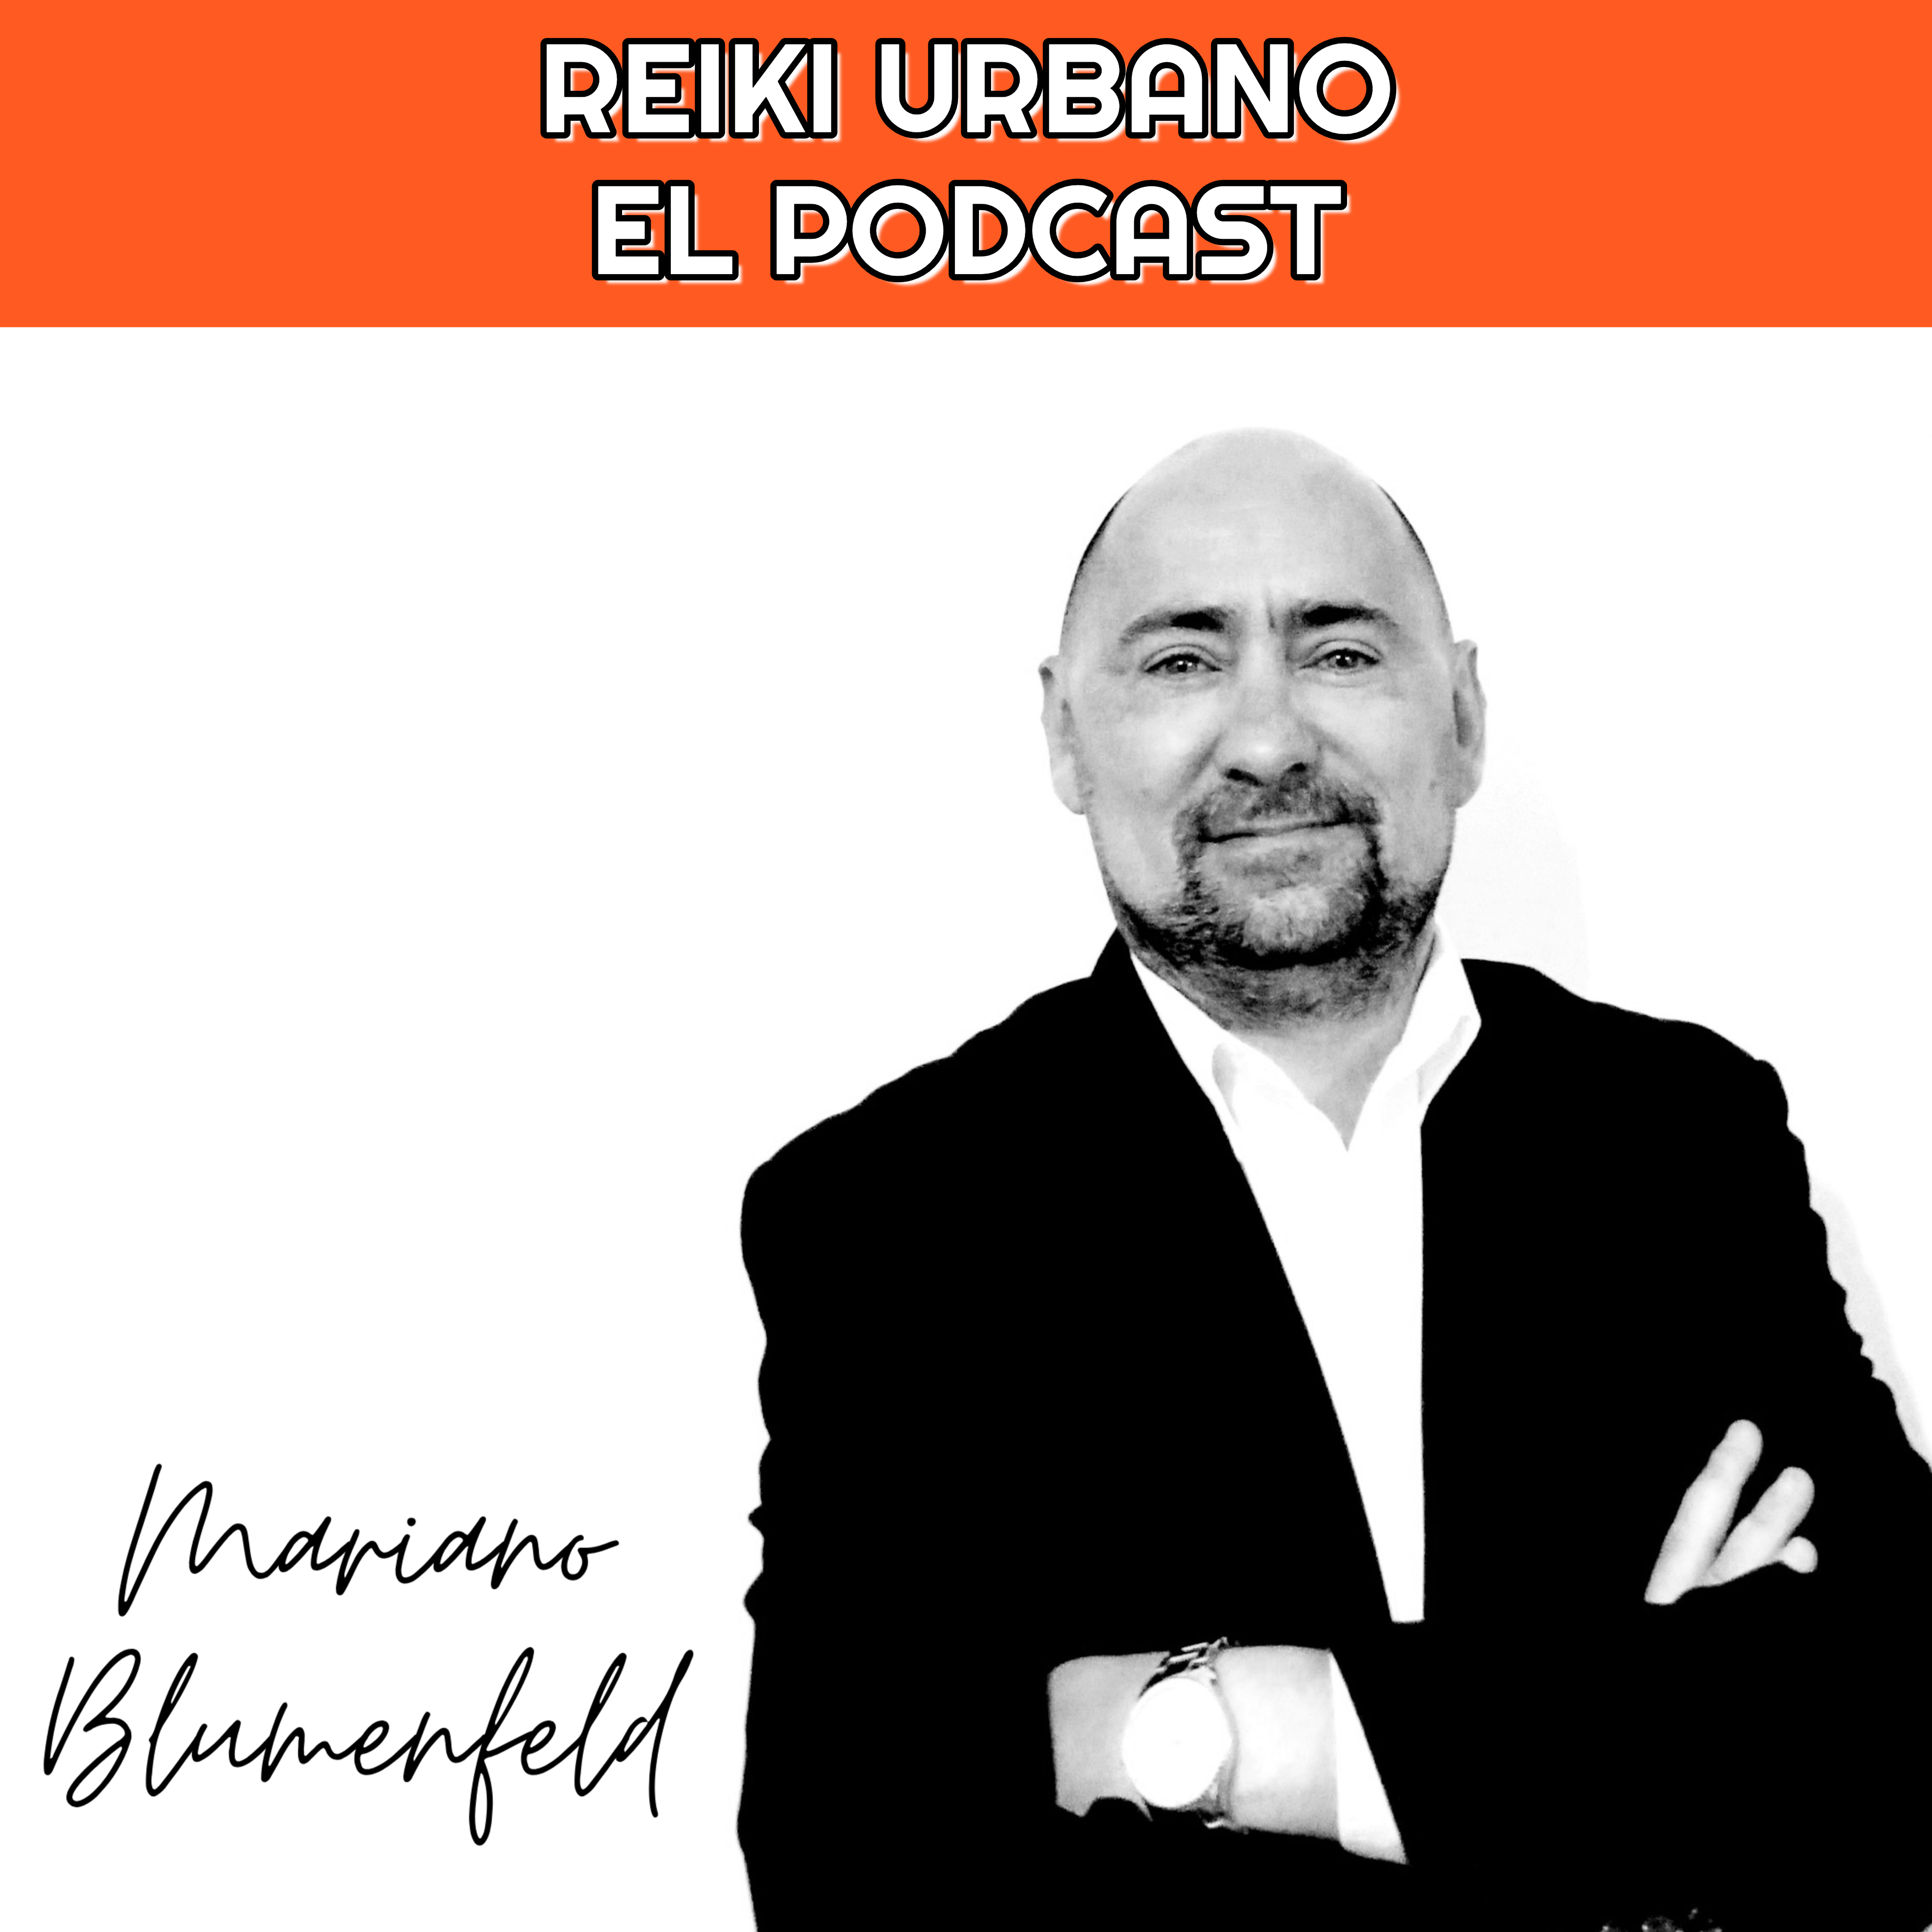 El podcast de Reiki Urbano